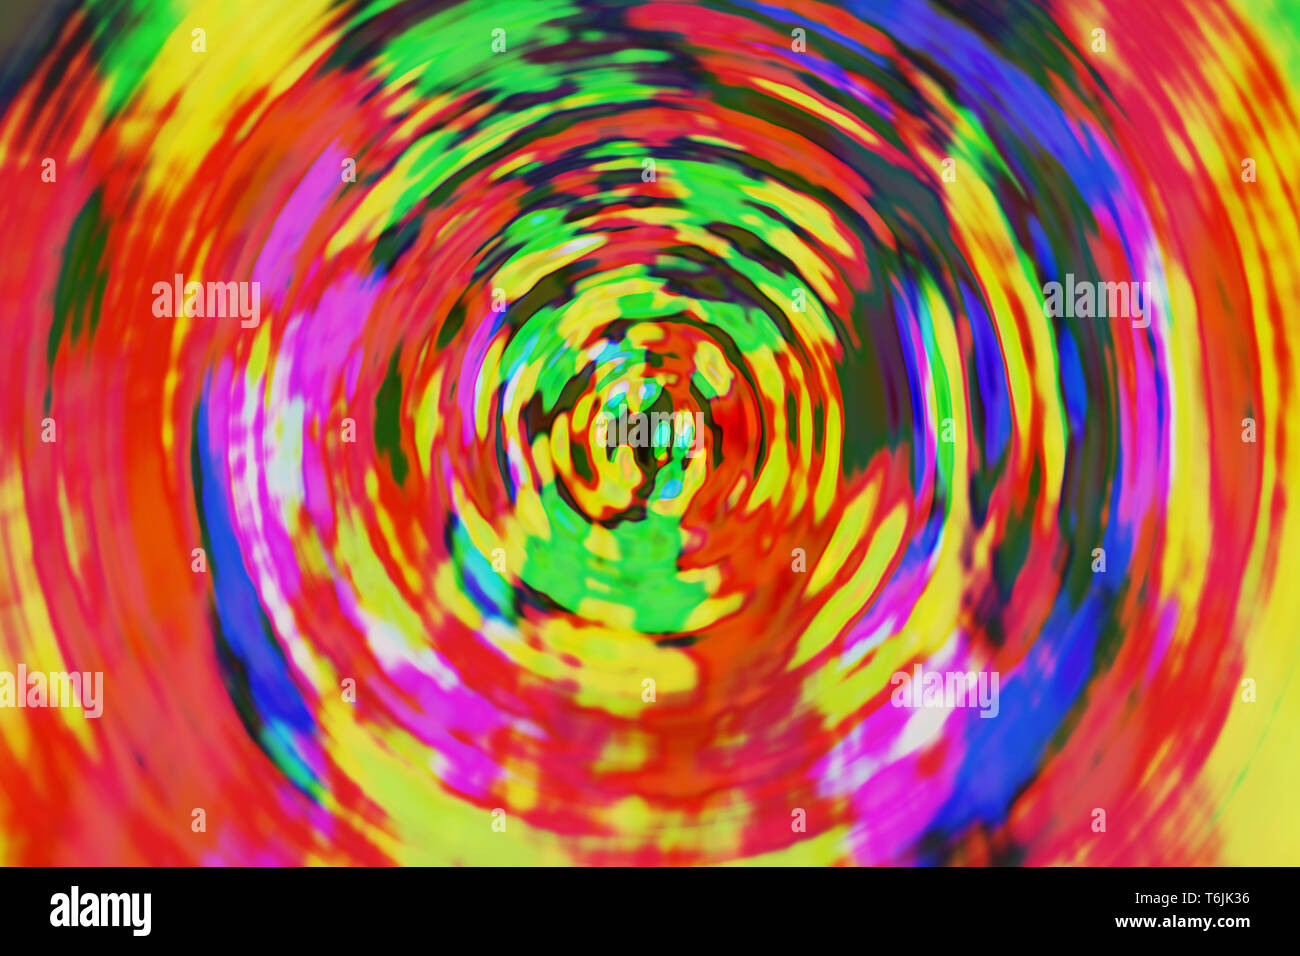 Spirale Couleur Folle Image En Arriere Plan Arriere Plan Colore Photo Stock Alamy